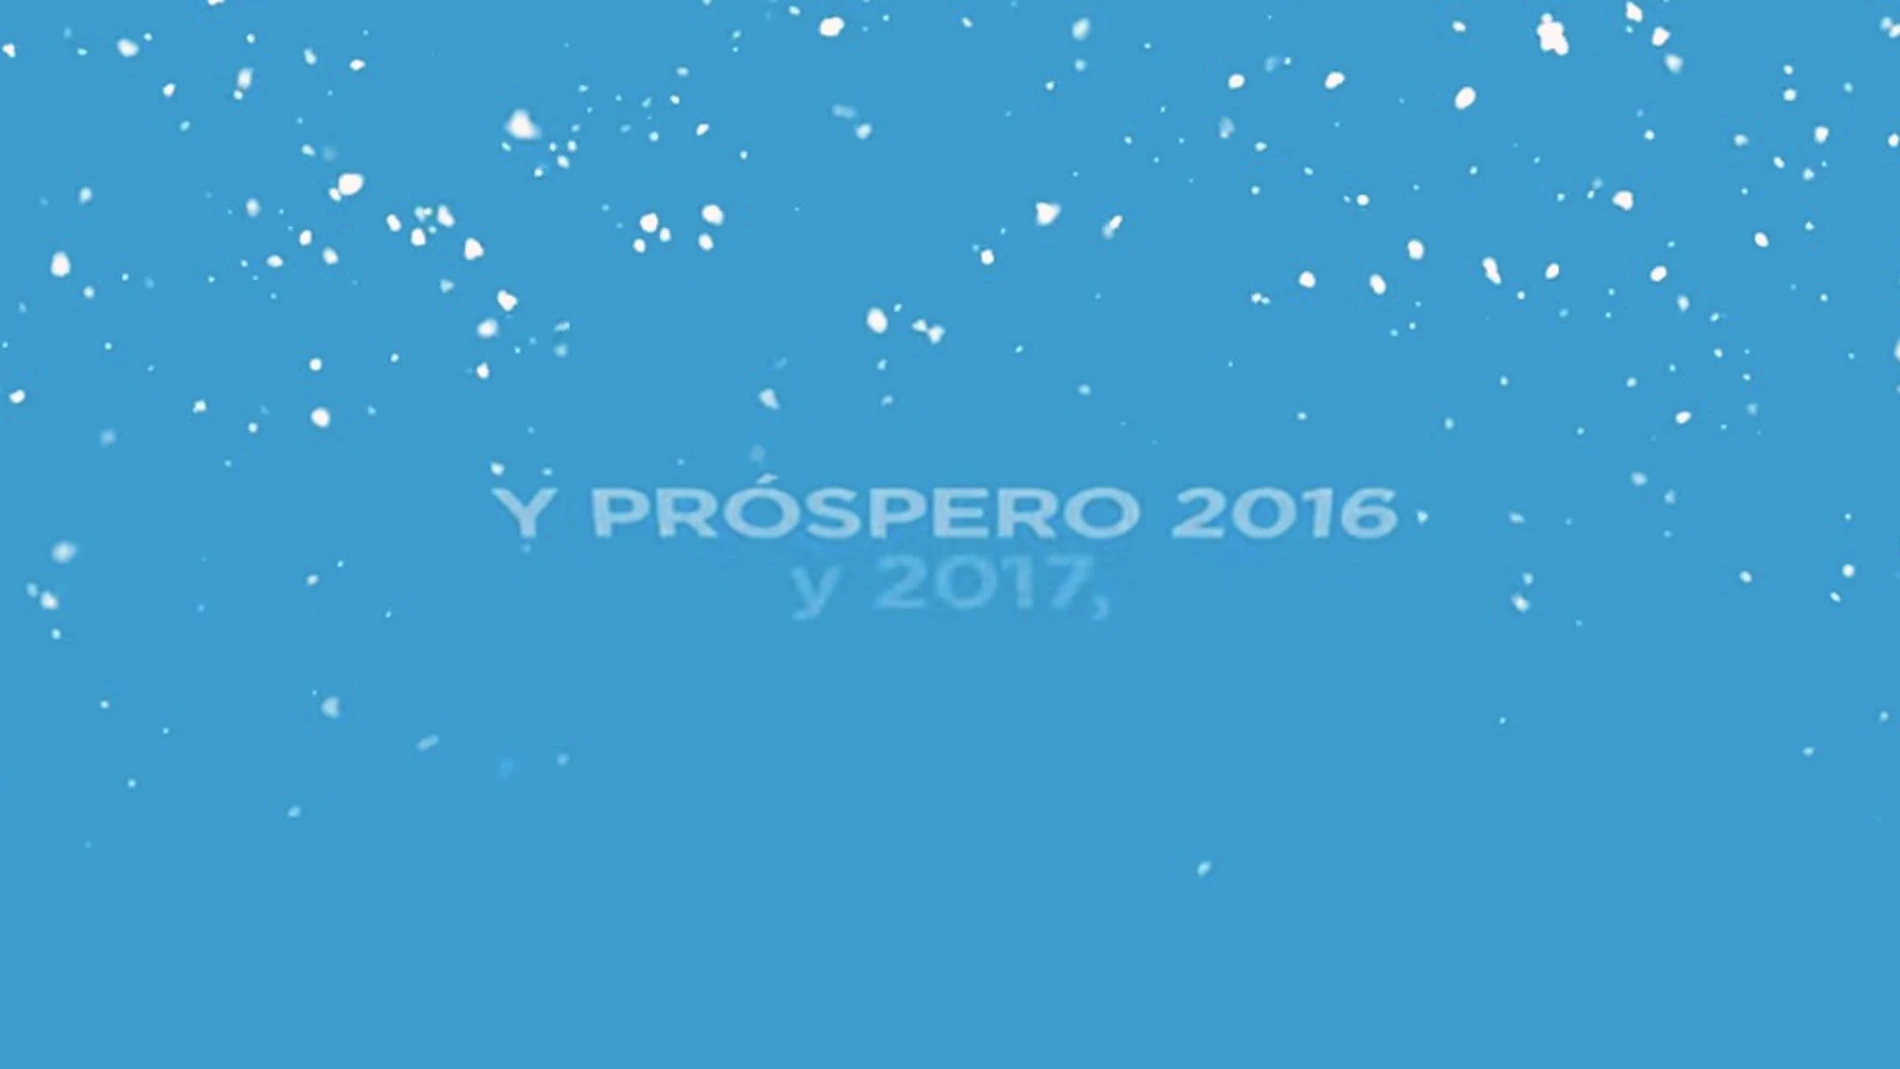 El PP desea un "próspero 2016, y 2017..."